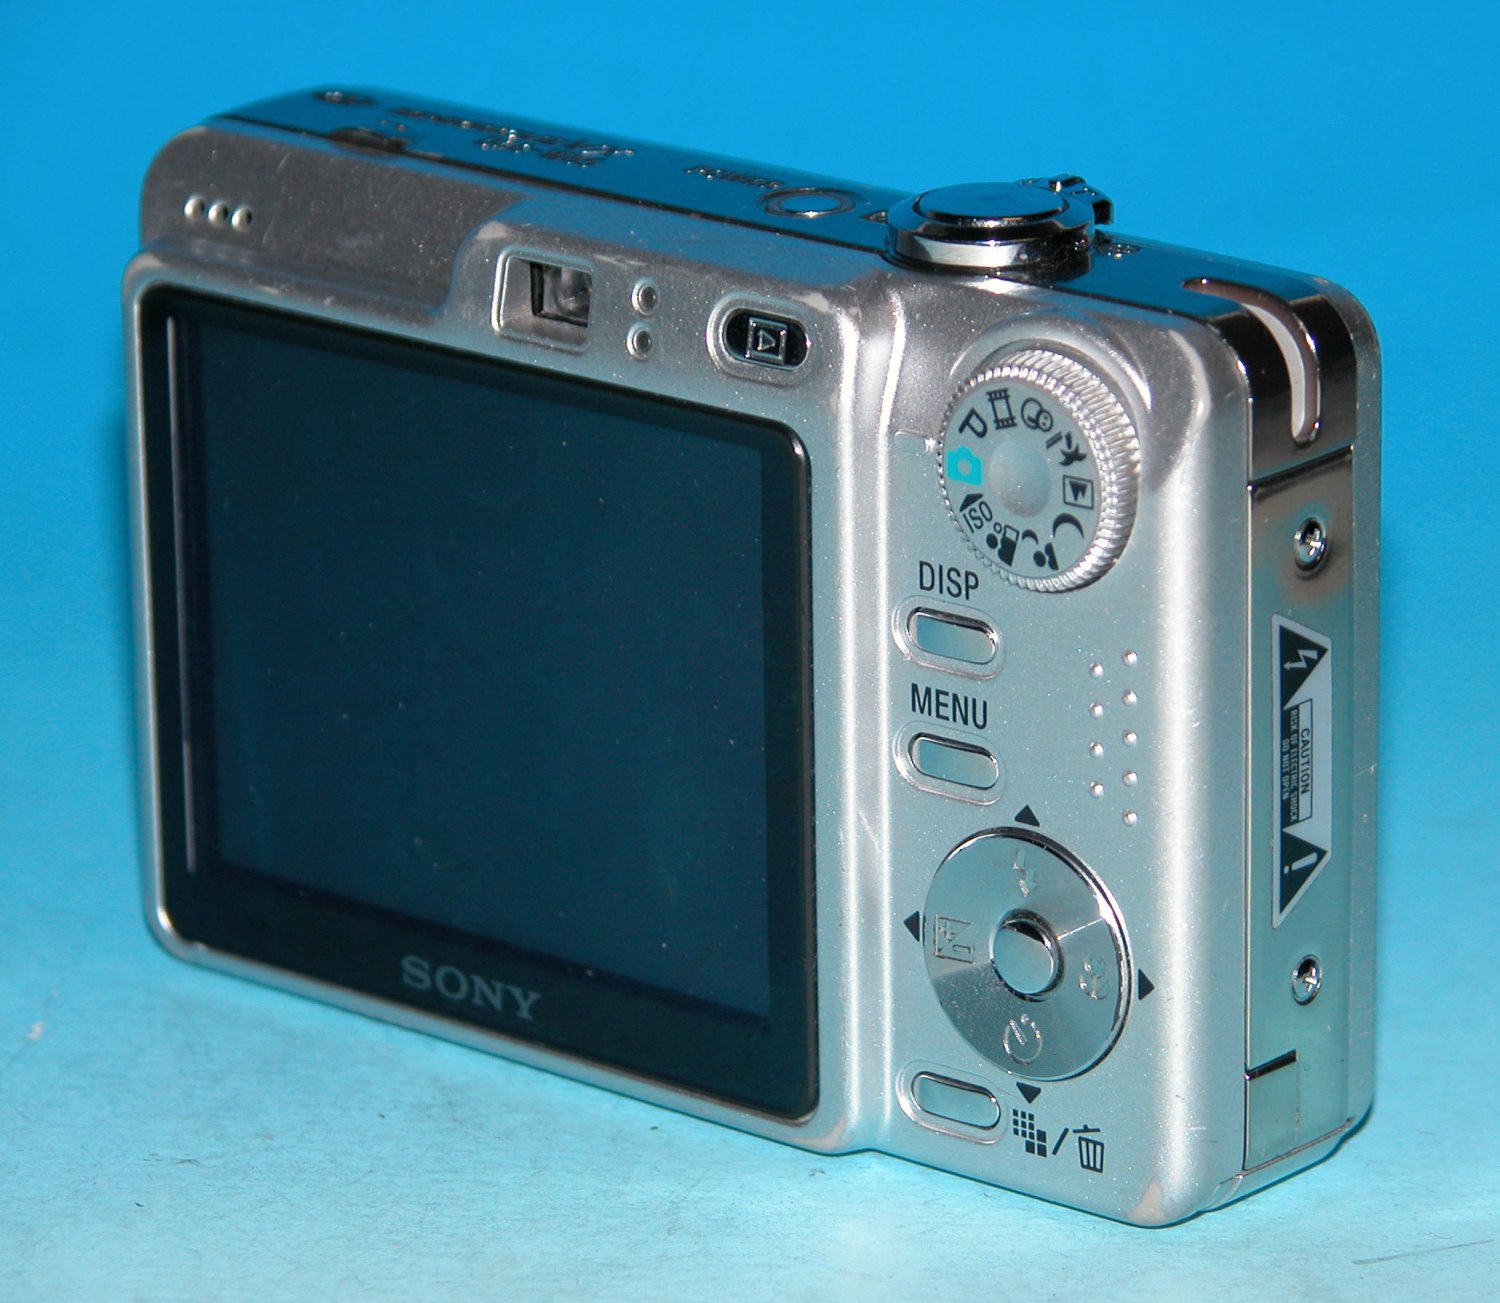 Sony Cyber-shot DSC-W55 7.2MP Digital Camera - Silver #6571